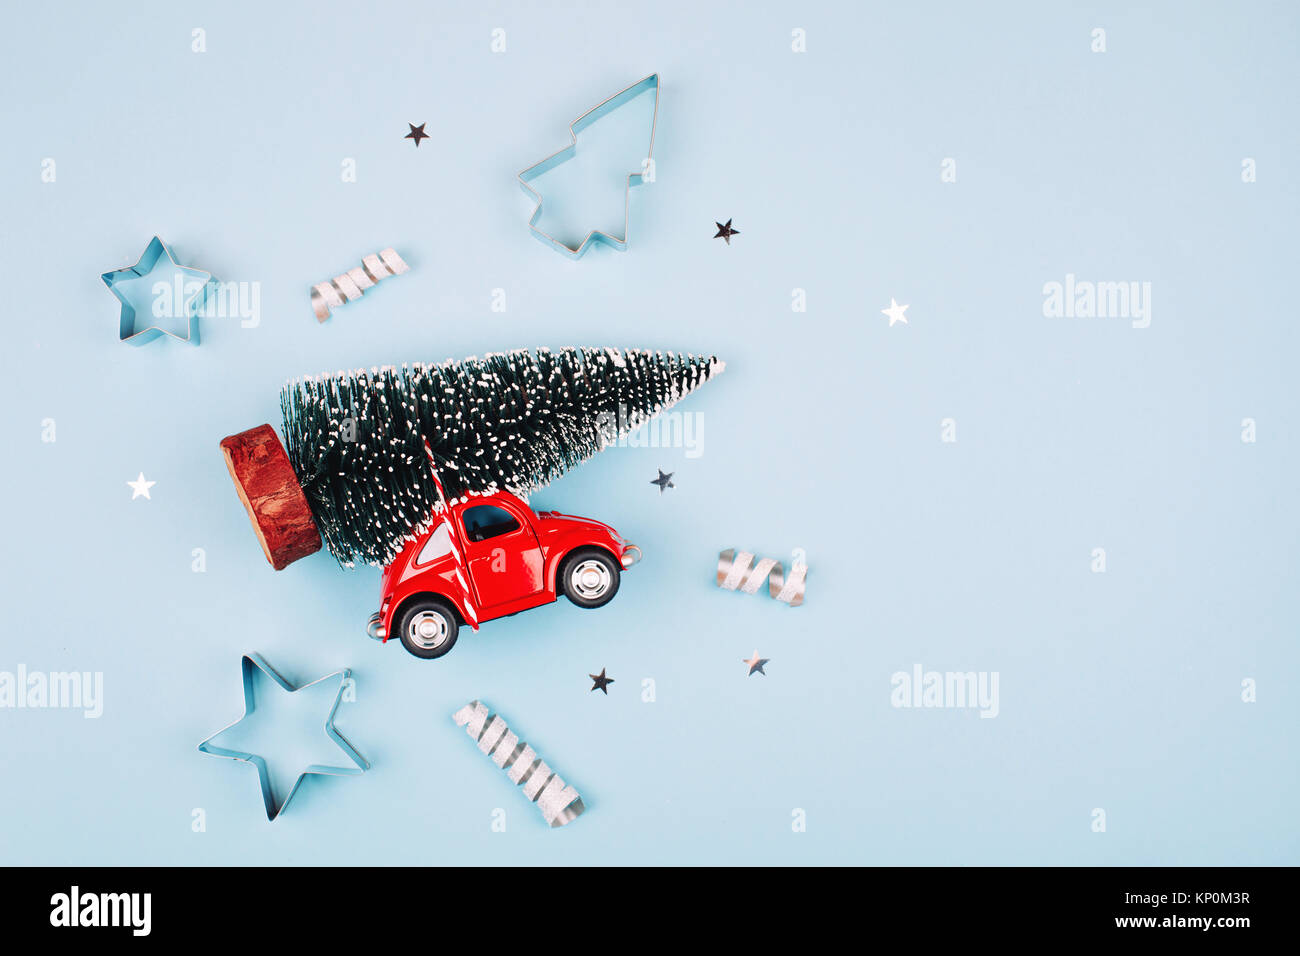 Spielzeug Rotes Auto Mit Tannenbaum Auf Dem Dach Blau Pastell Hintergrund Flach Stil Konzept Der Feiern Das Neue Jahr Weihnachtliche Stimmung Stockfotografie Alamy